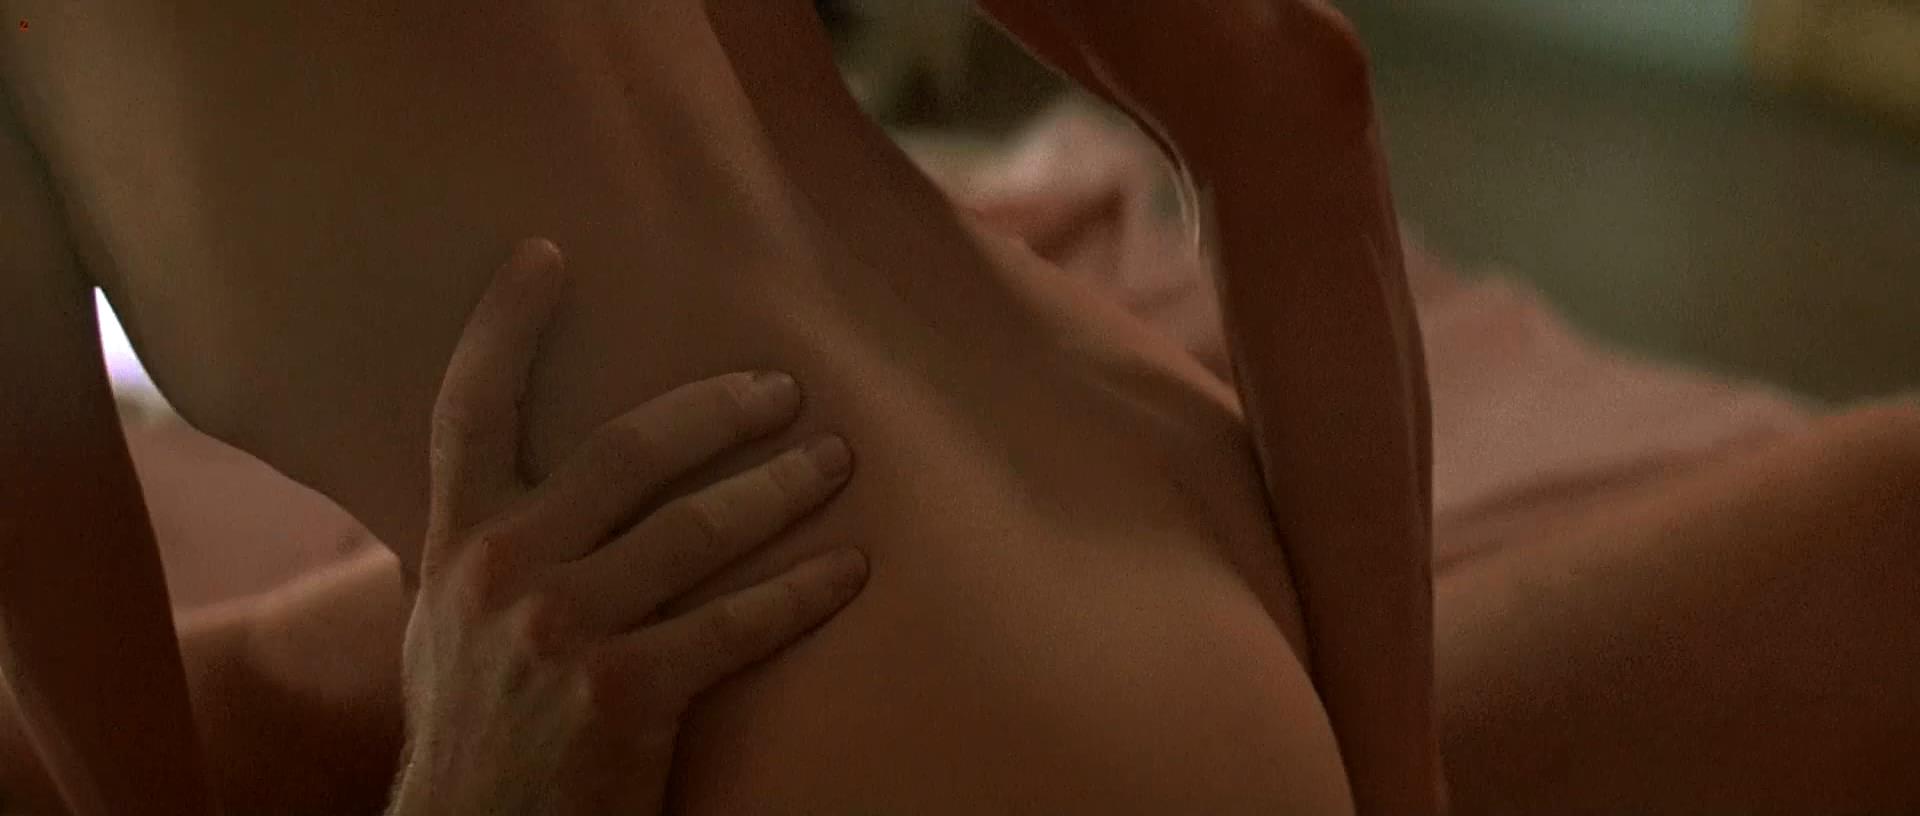 Kim Basinger Nude Scene.